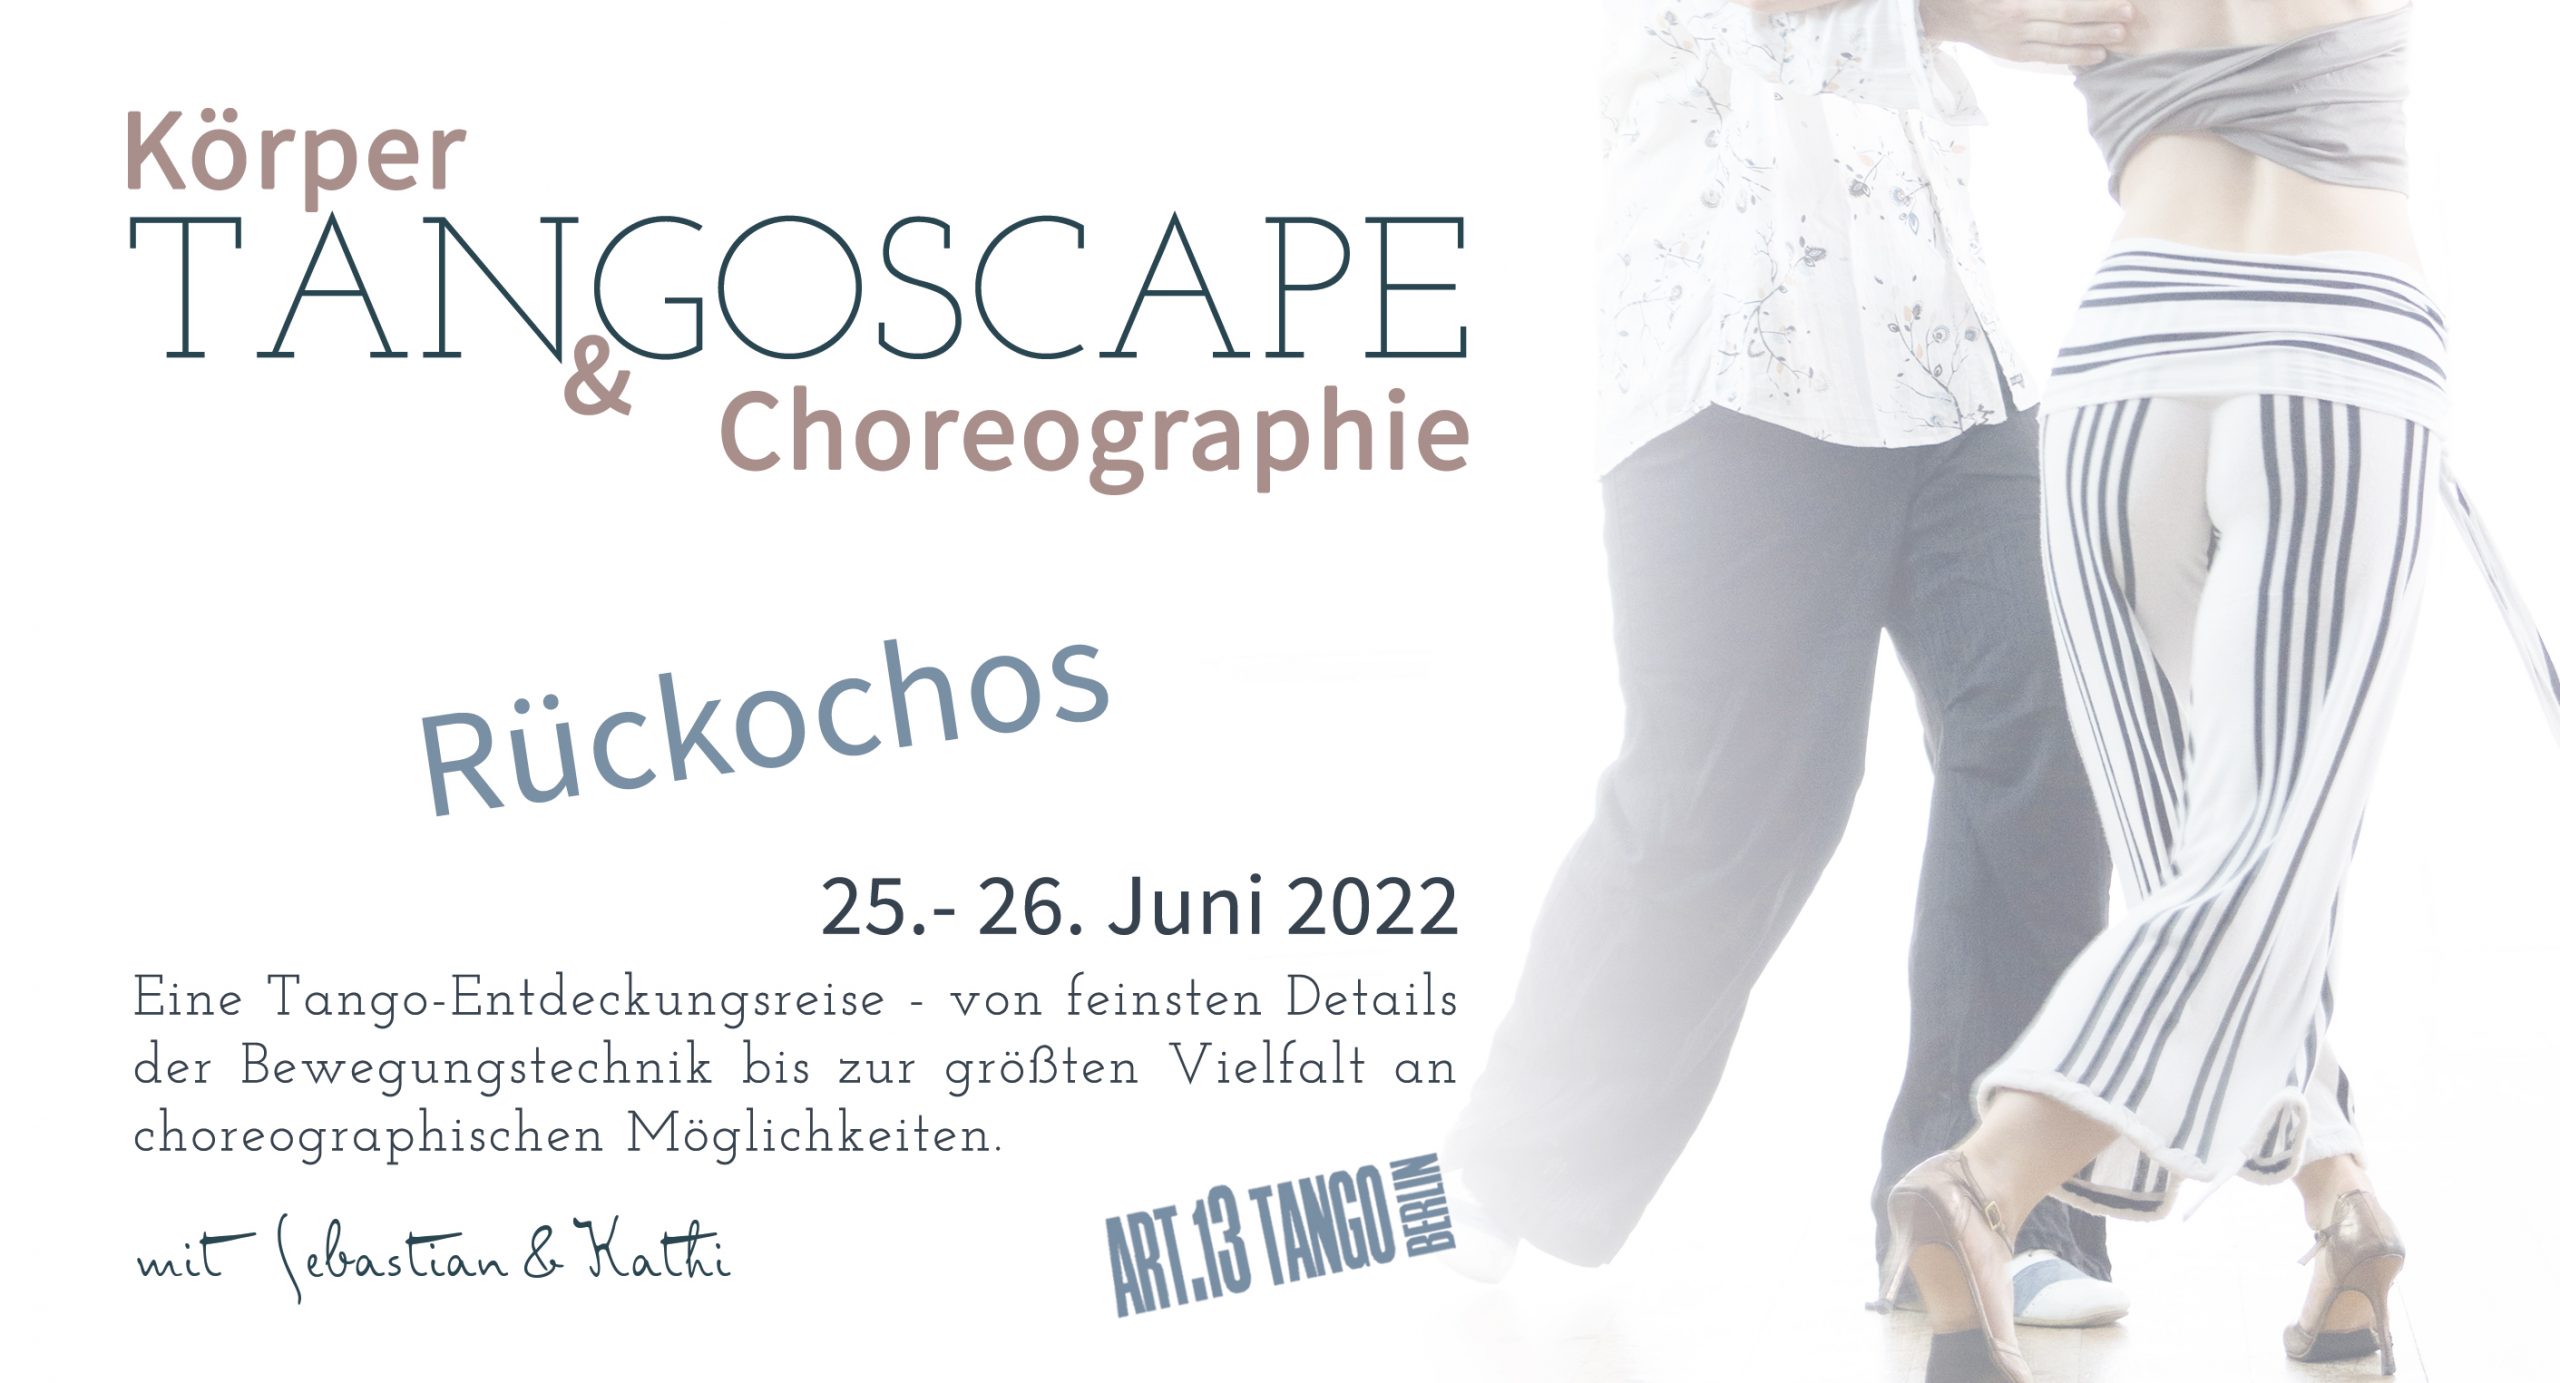 TANGOSCAPE: Körper & Choreographie | Rückochos | mit Sebastian & Kathi